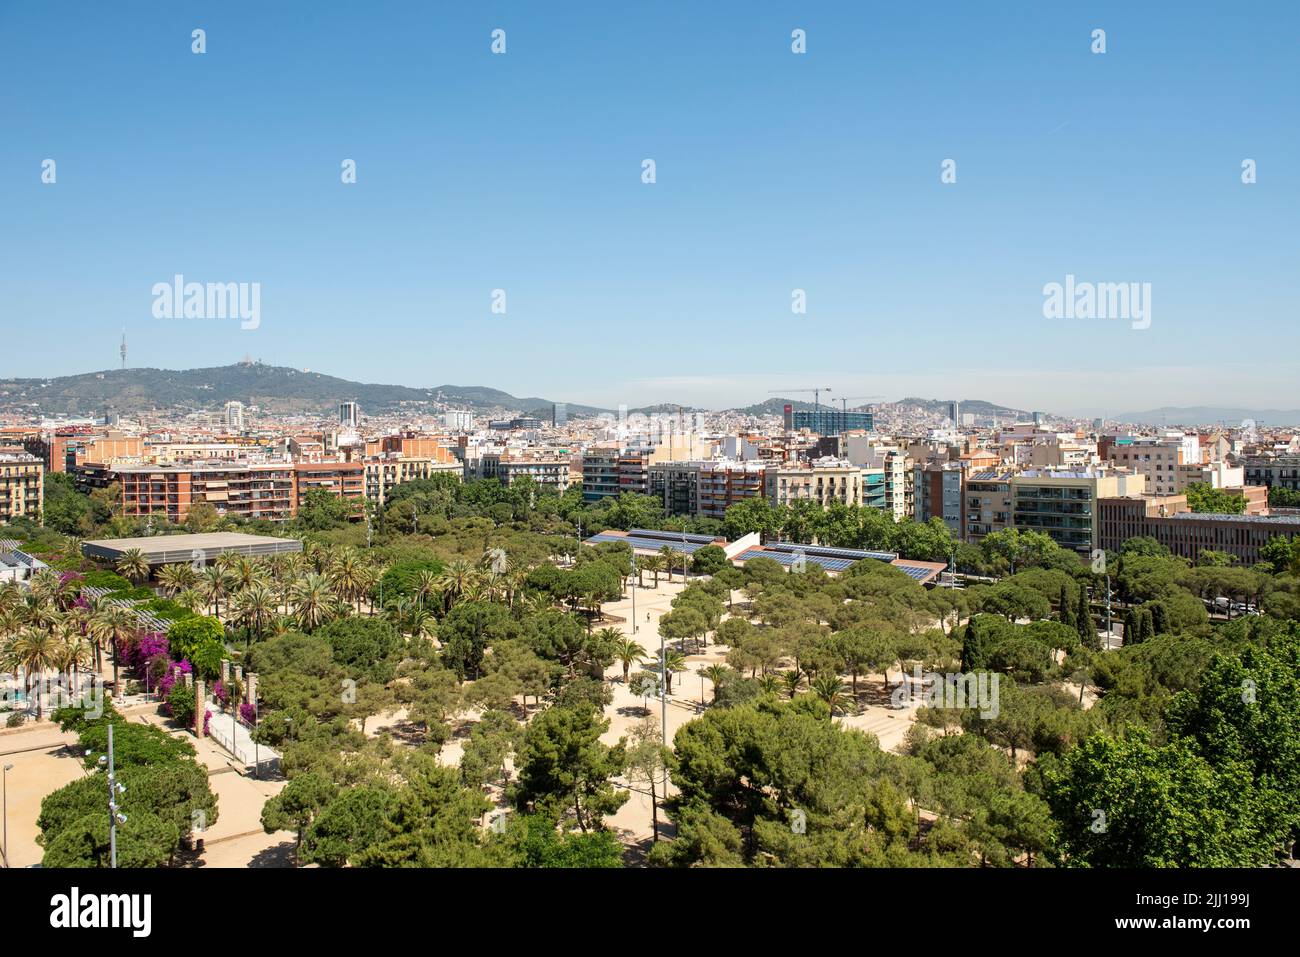 Parc de Joan Miró in Barcelona, Spain Stock Photo